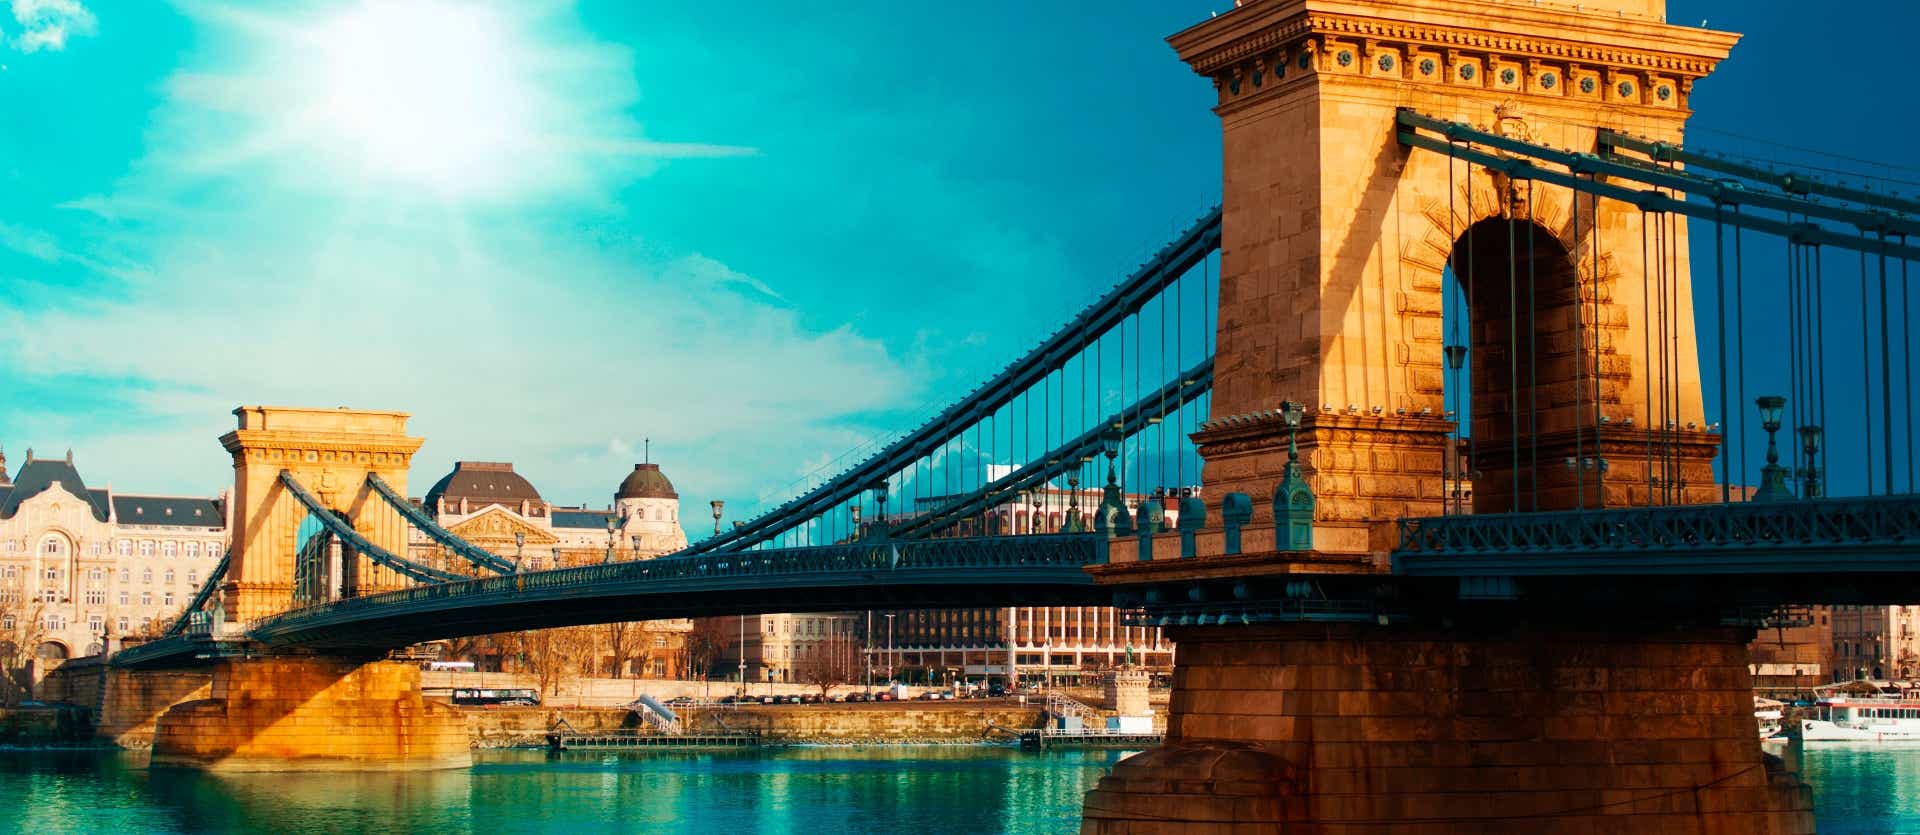 Puente de las Cadenas <span class="iconos separador"></span> Budapest <span class="iconos separador"></span> Hungría